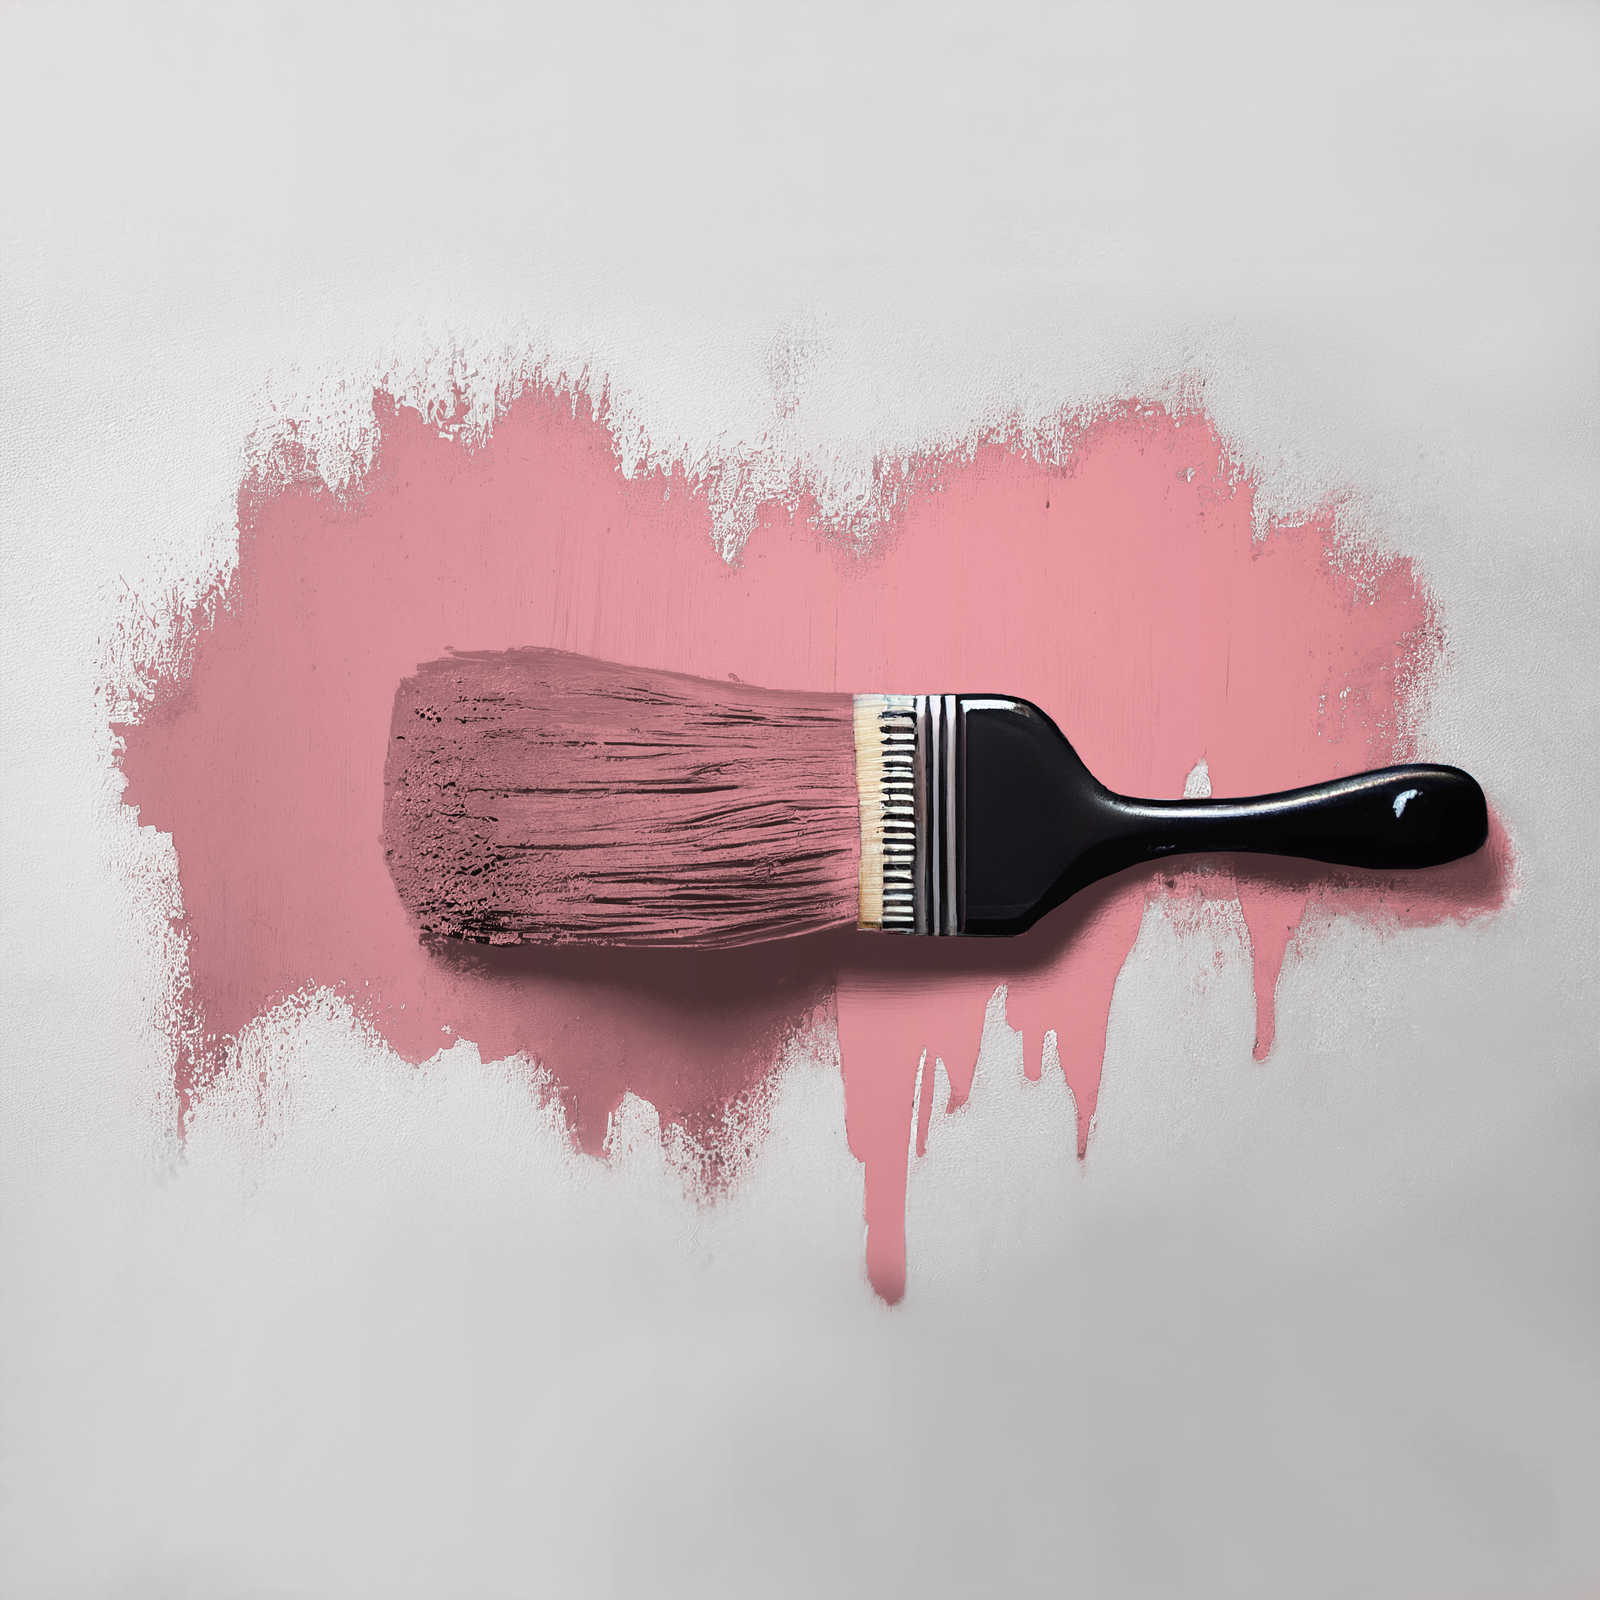             Pittura murale TCK7010 »Masterfully Macaron« in rosa vivo – 5,0 litri
        